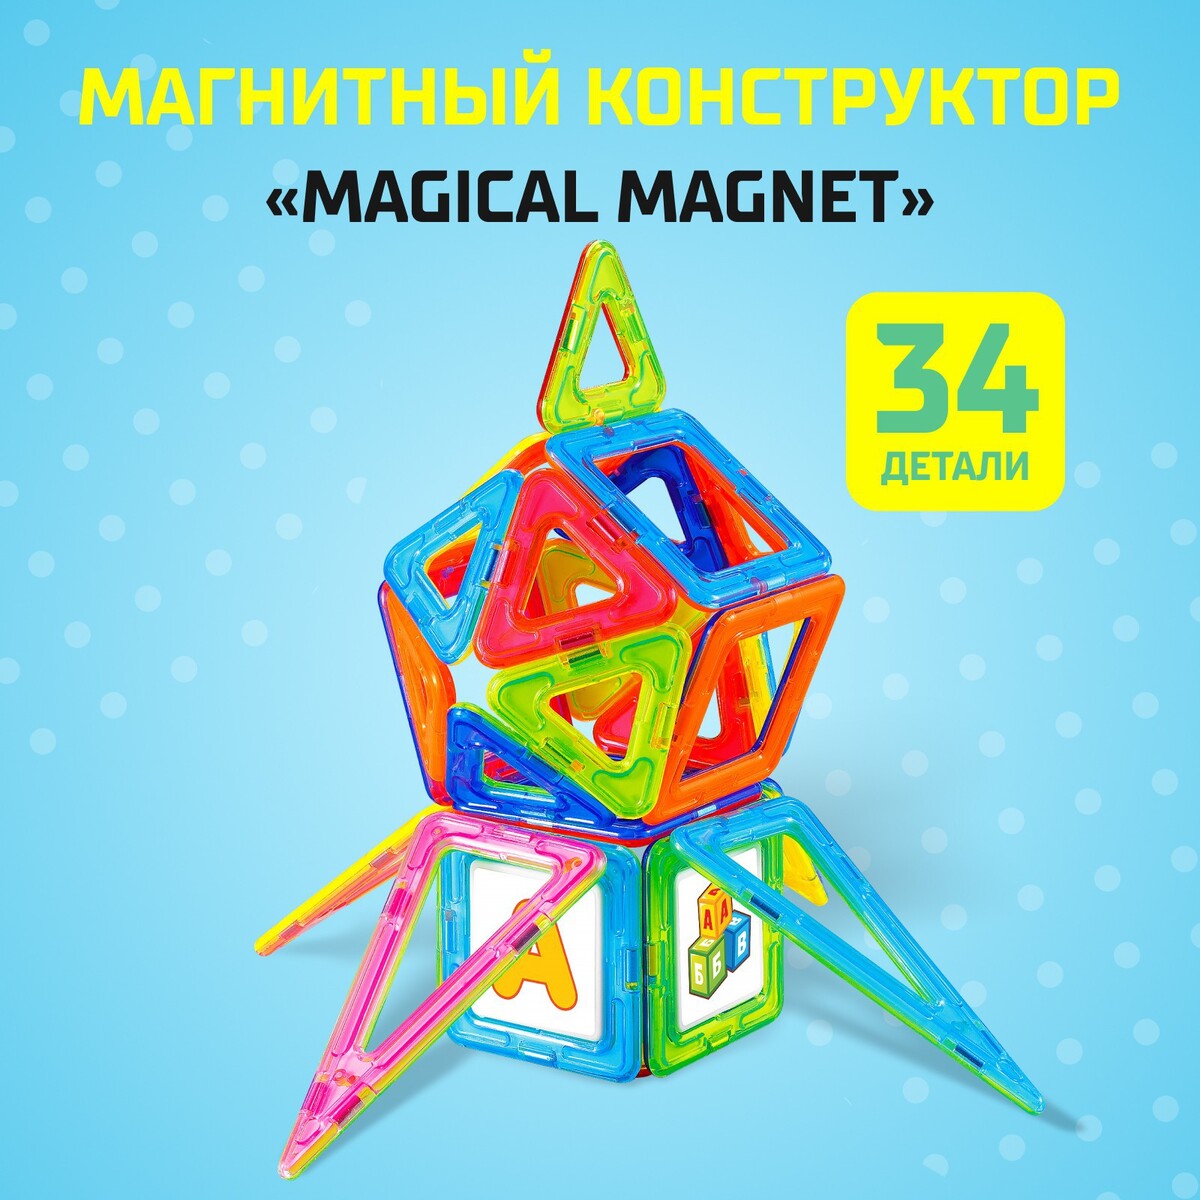 Магнитный конструктор magical magnet, 34 детали, детали матовые набор пластиковых пуговиц на ножке d 15 мм 10 шт матовые коричневый